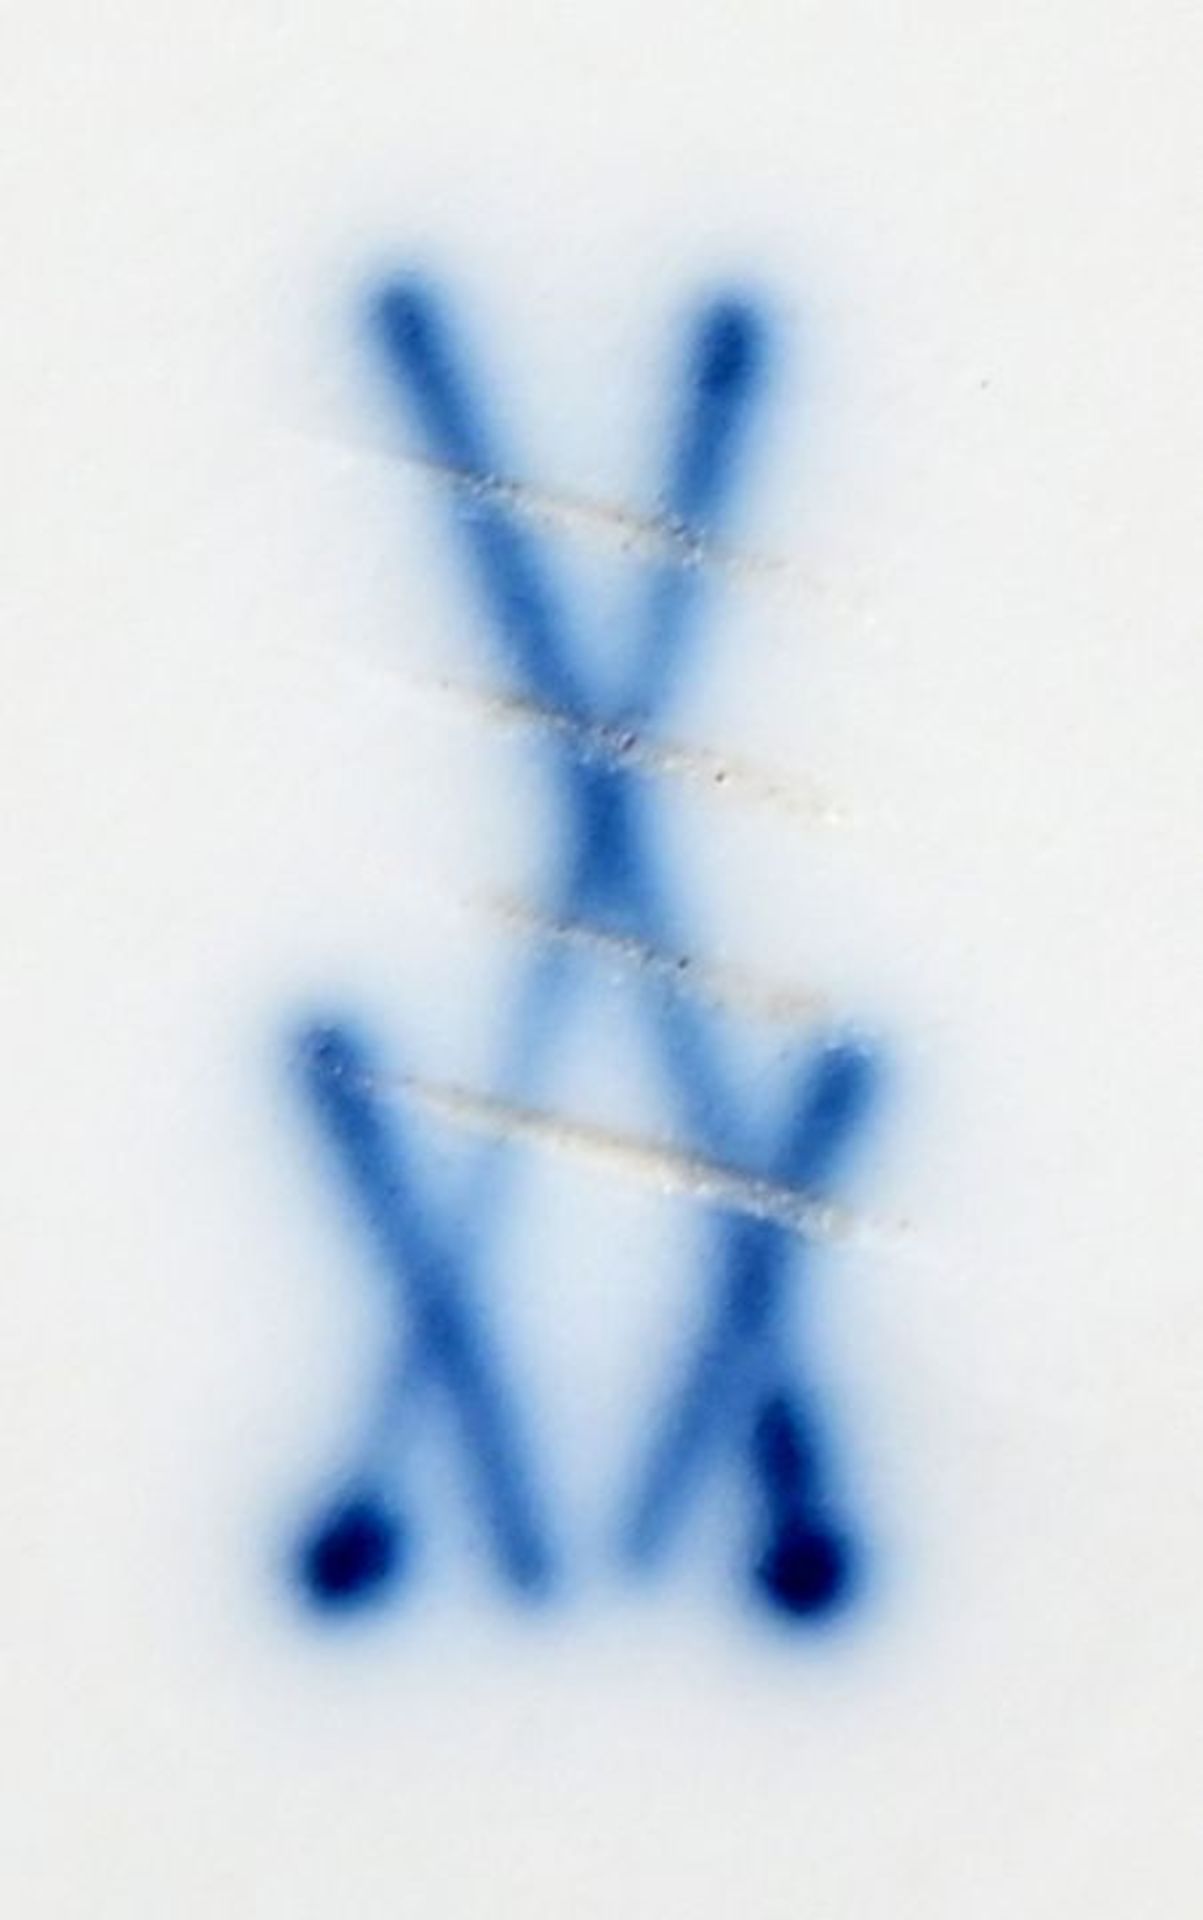 Zwiebelmuster/ blue onion pattern - Bild 2 aus 3